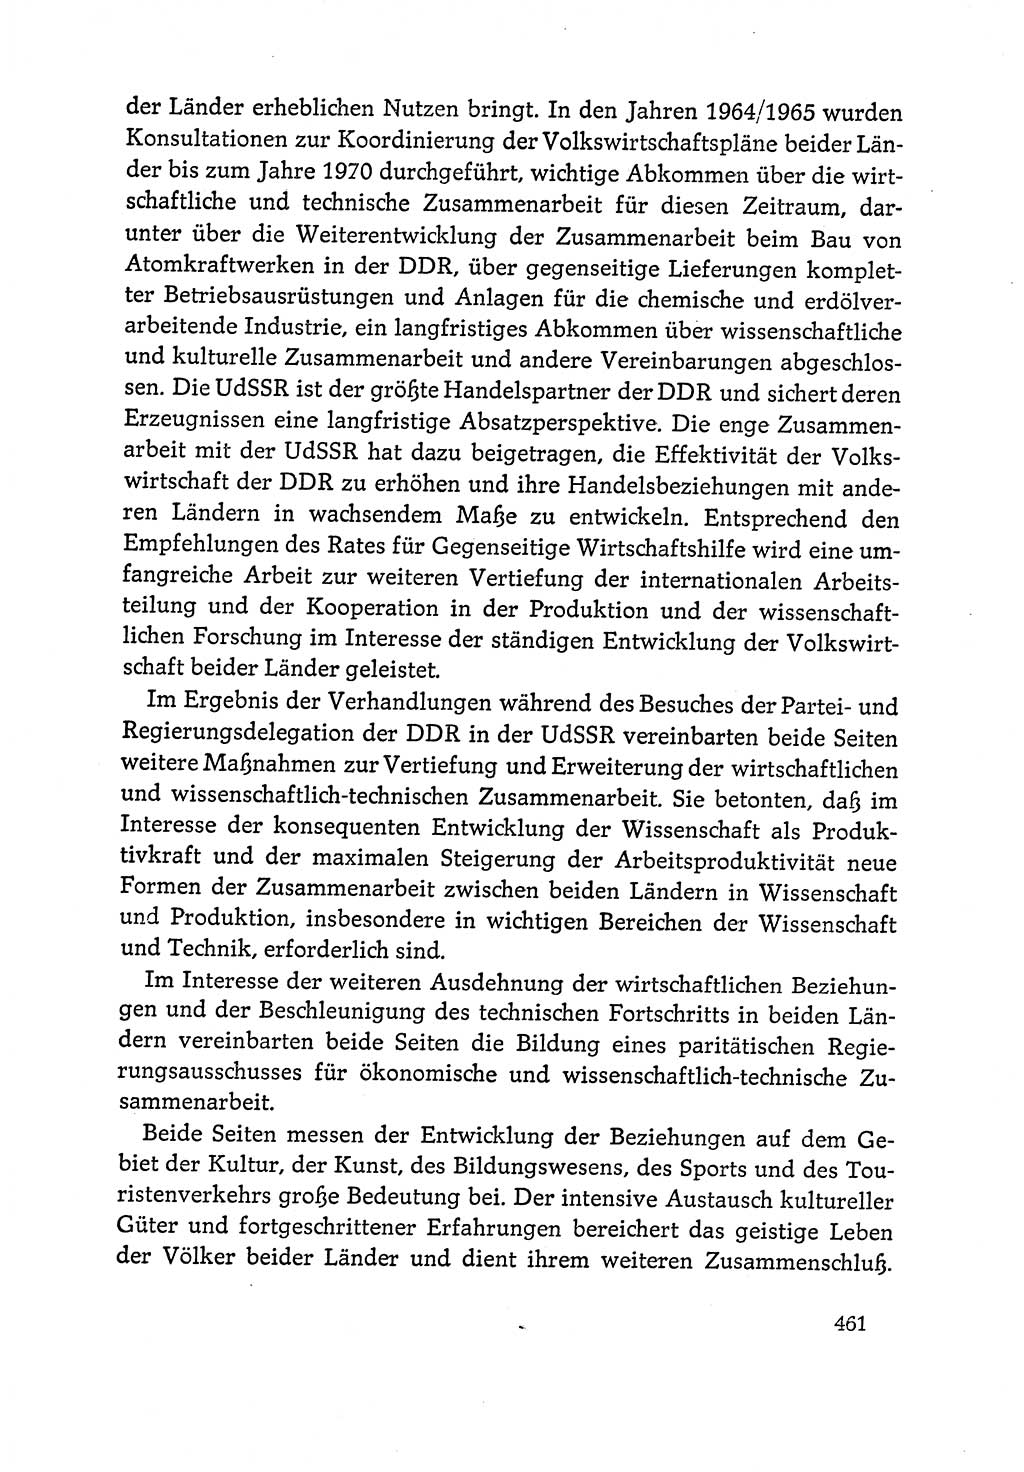 Dokumente der Sozialistischen Einheitspartei Deutschlands (SED) [Deutsche Demokratische Republik (DDR)] 1964-1965, Seite 461 (Dok. SED DDR 1964-1965, S. 461)